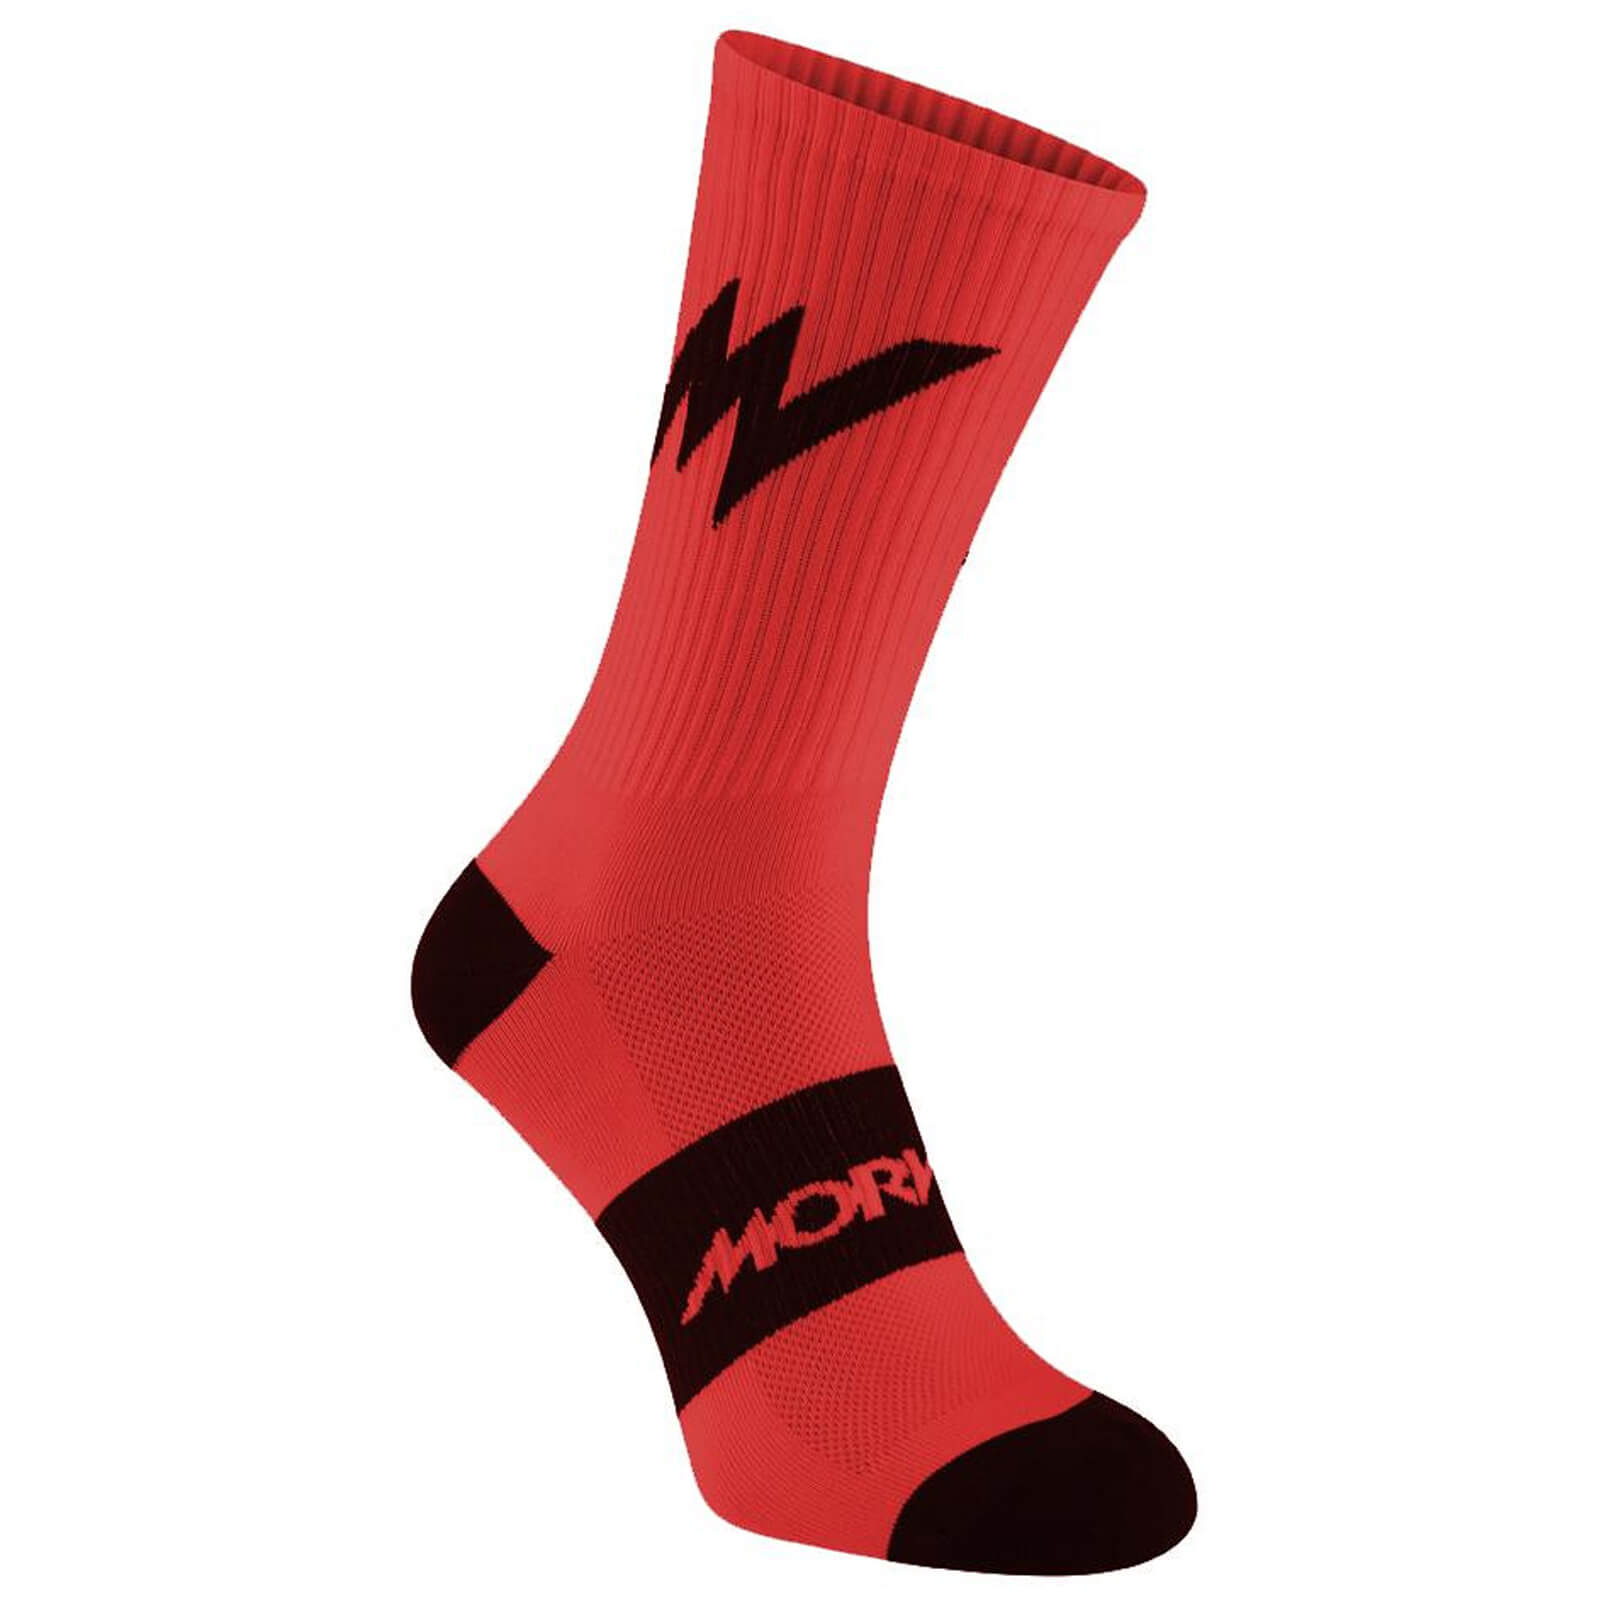 Morvelo Series Emblem Red Socks - S/M